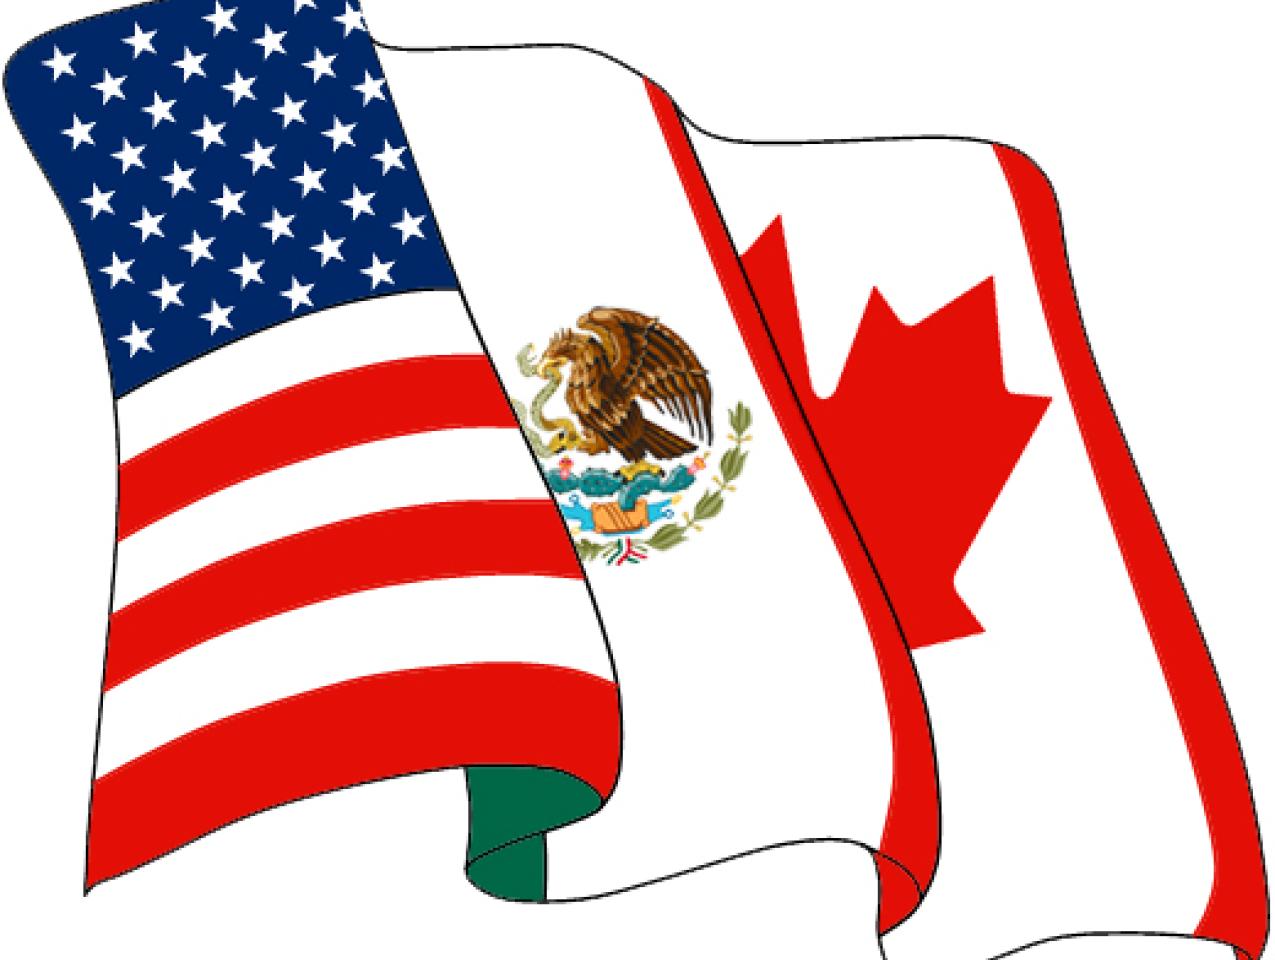 Hoover hosts NAFTA at Twenty conference